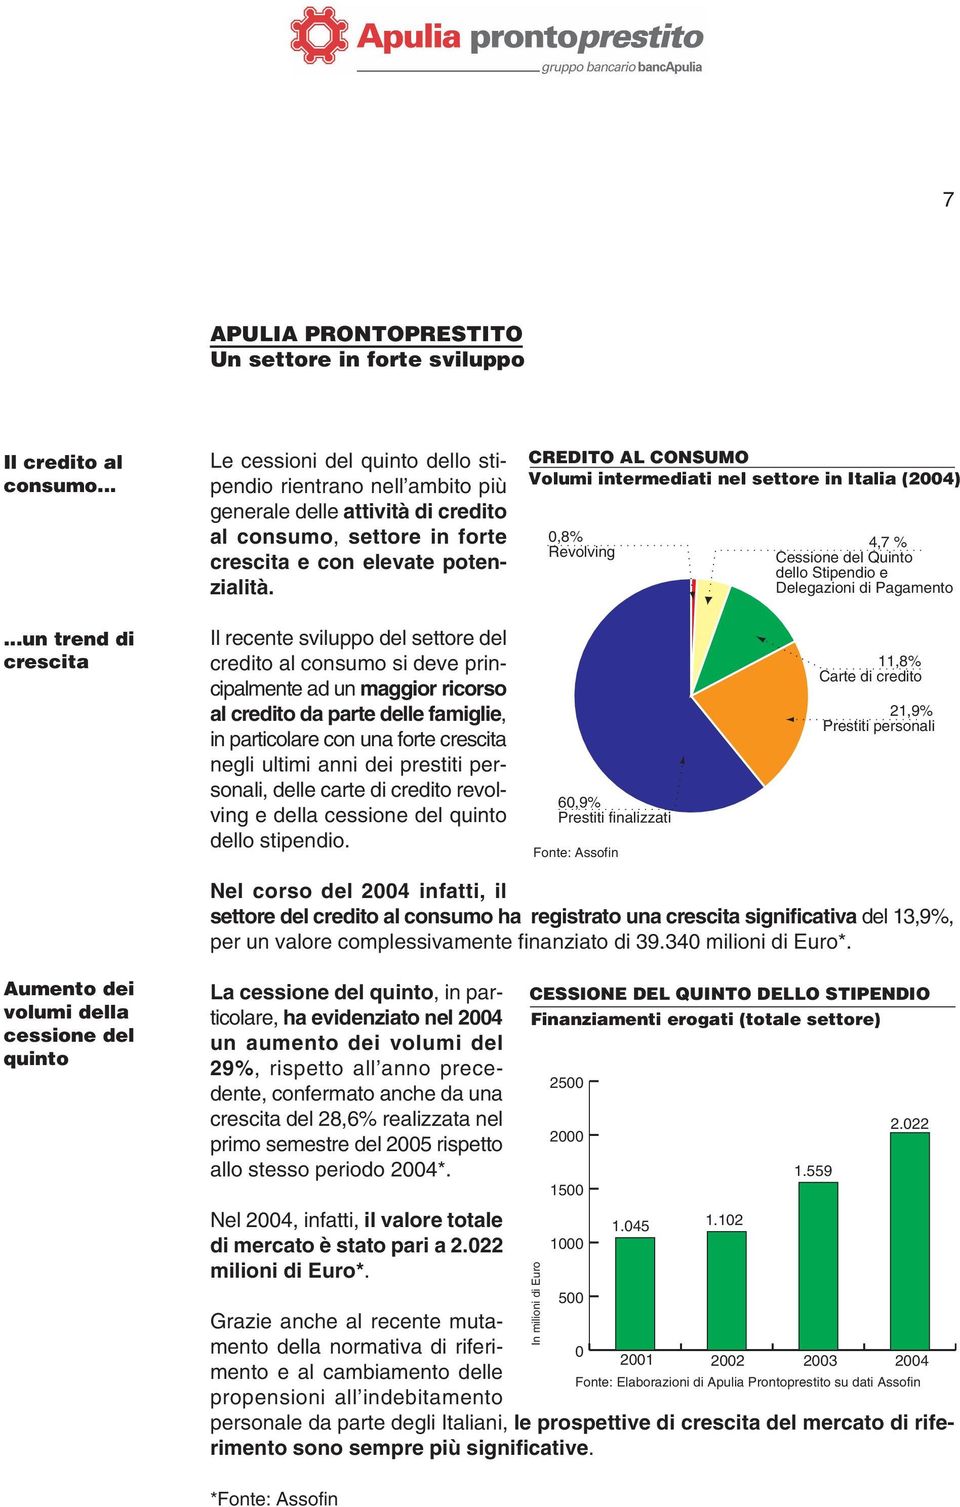 CREDITO AL CONSUMO Volumi intermediati nel settore in Italia (2004) 0,8% Revolving 4,7 % Cessione del Quinto dello Stipendio e Delegazioni di Pagamento.